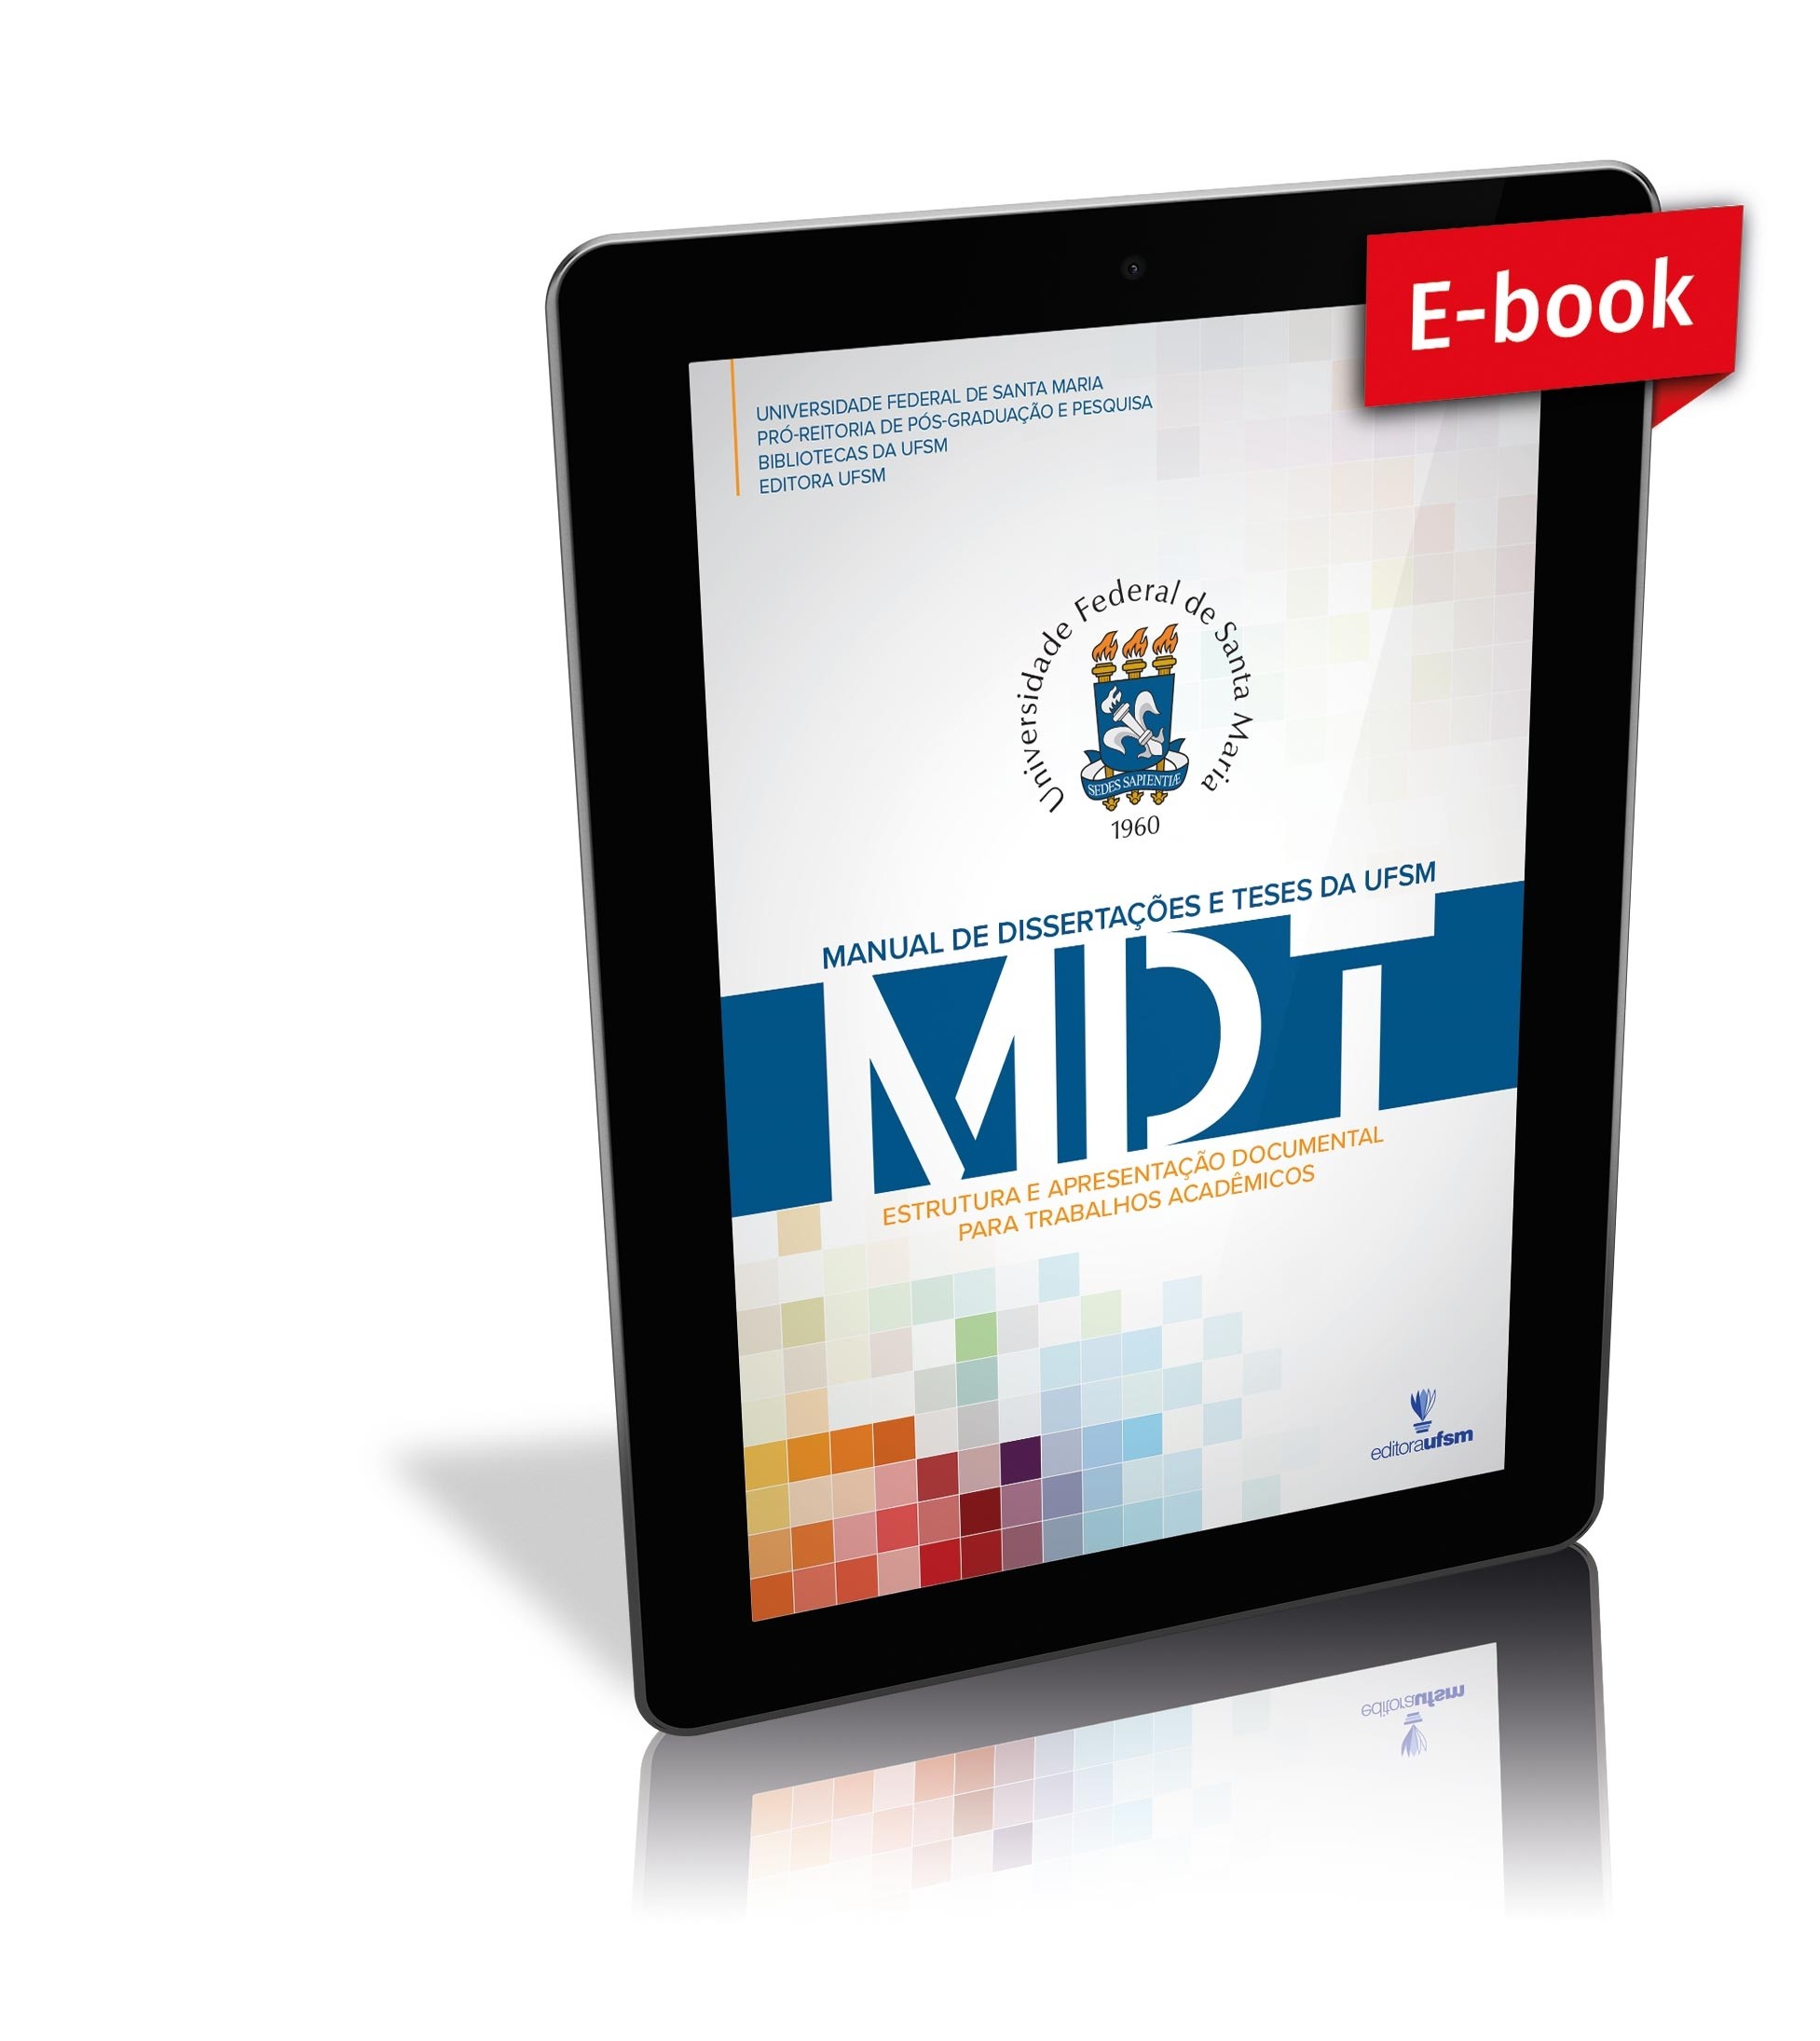 Capa do Manual de Dissertações e Teses da UFSM - MDT